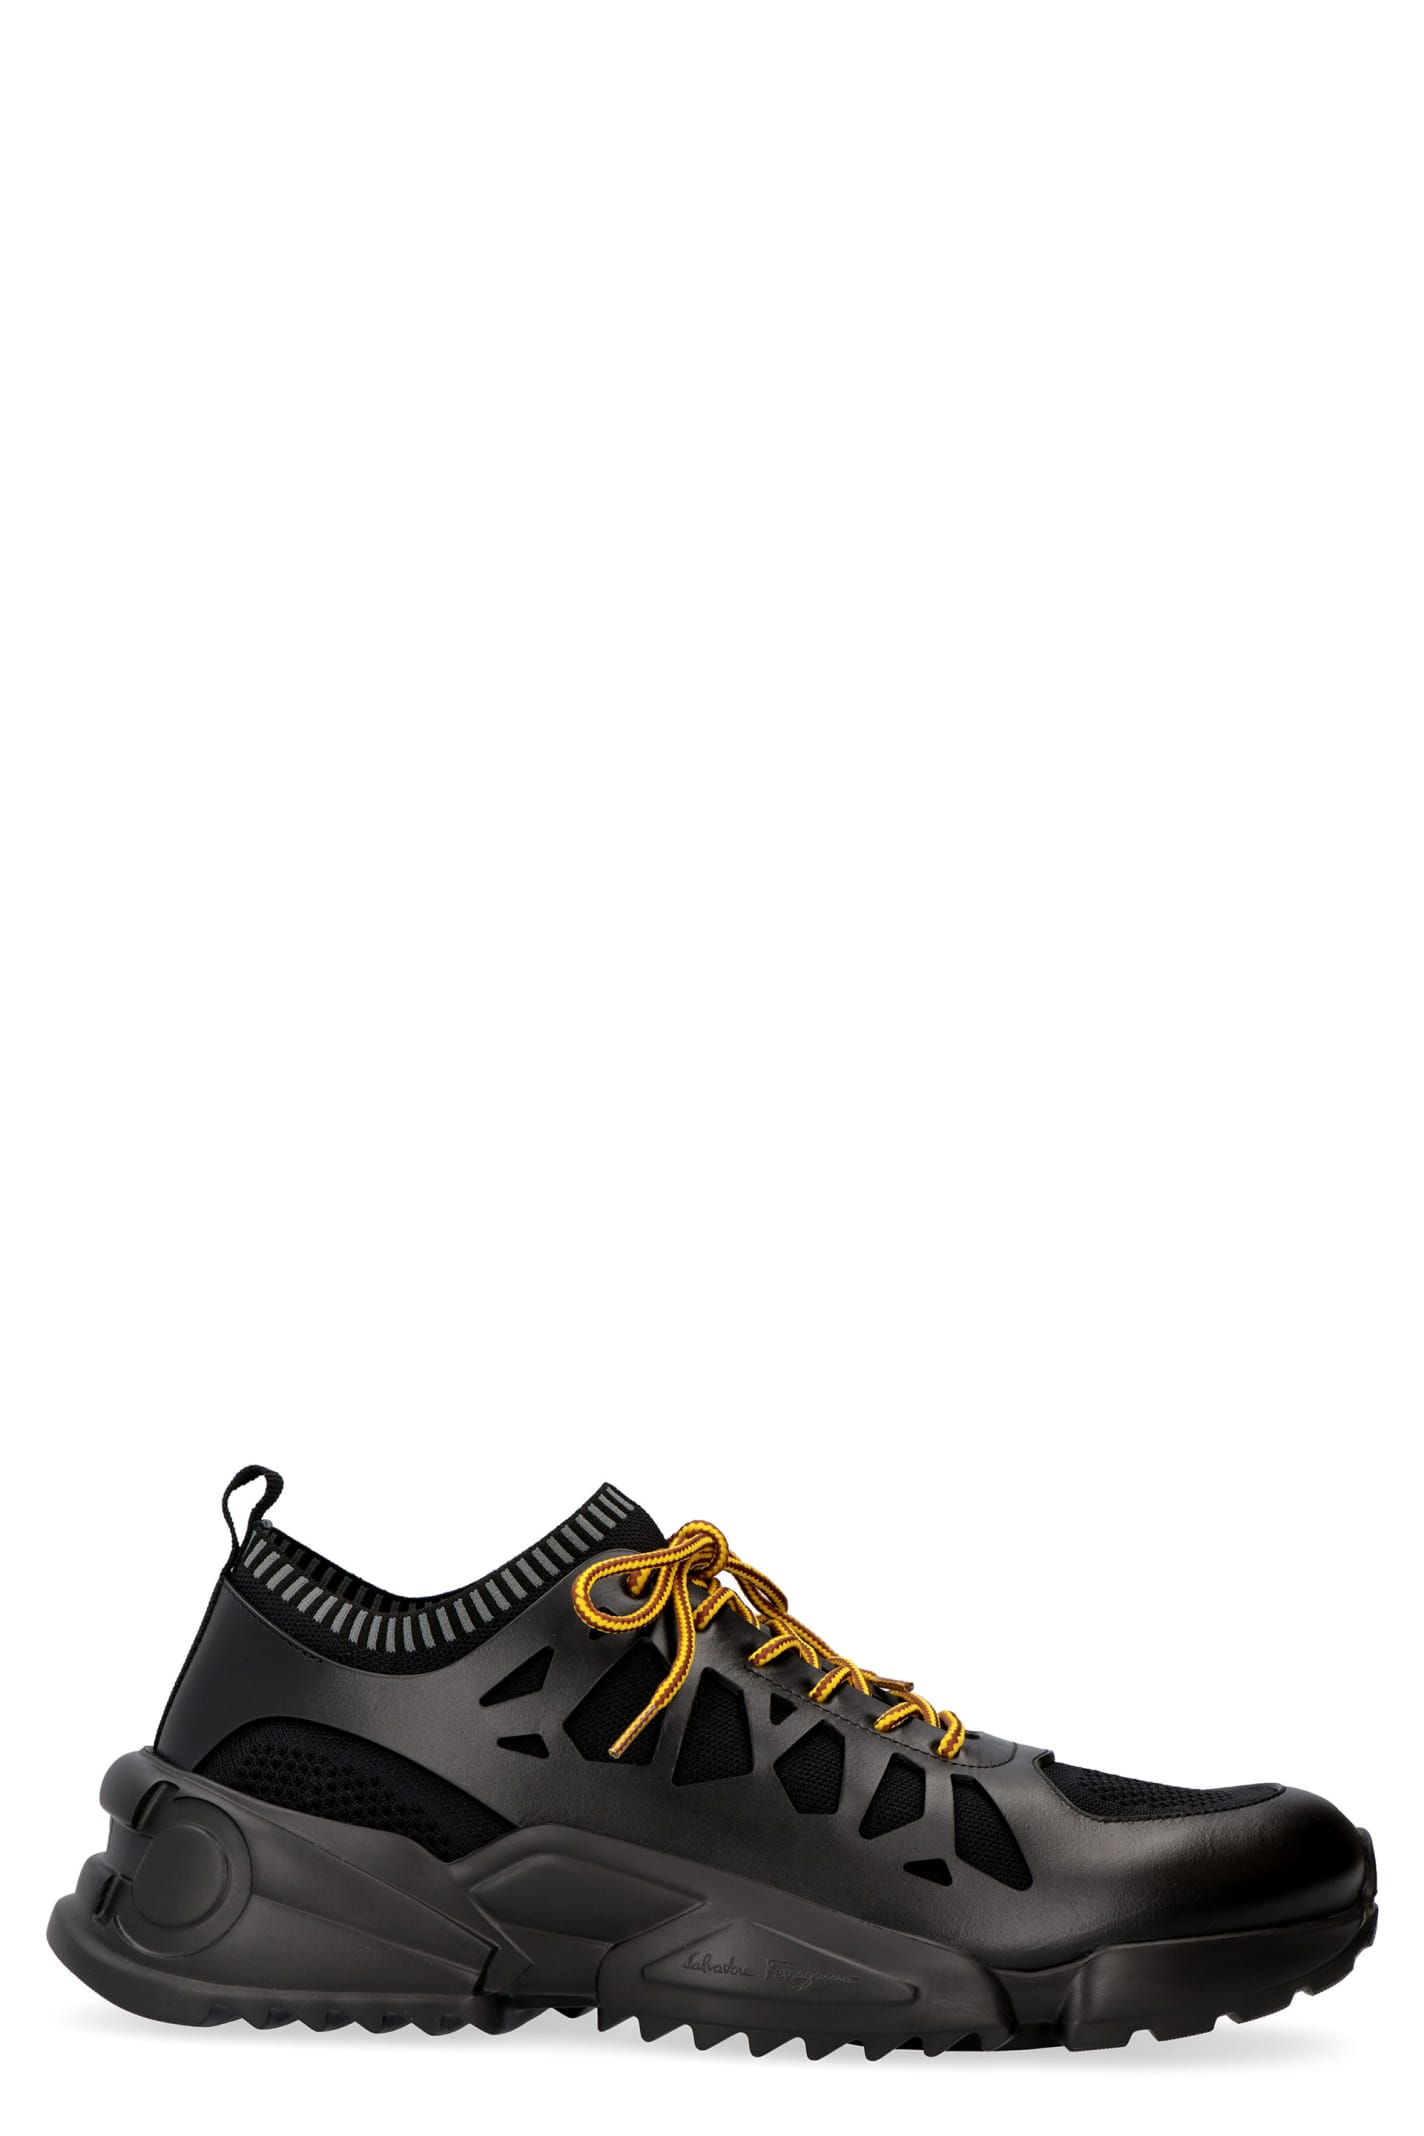 Salvatore Ferragamo Raintop Techno-fabric And Leather Sneakers